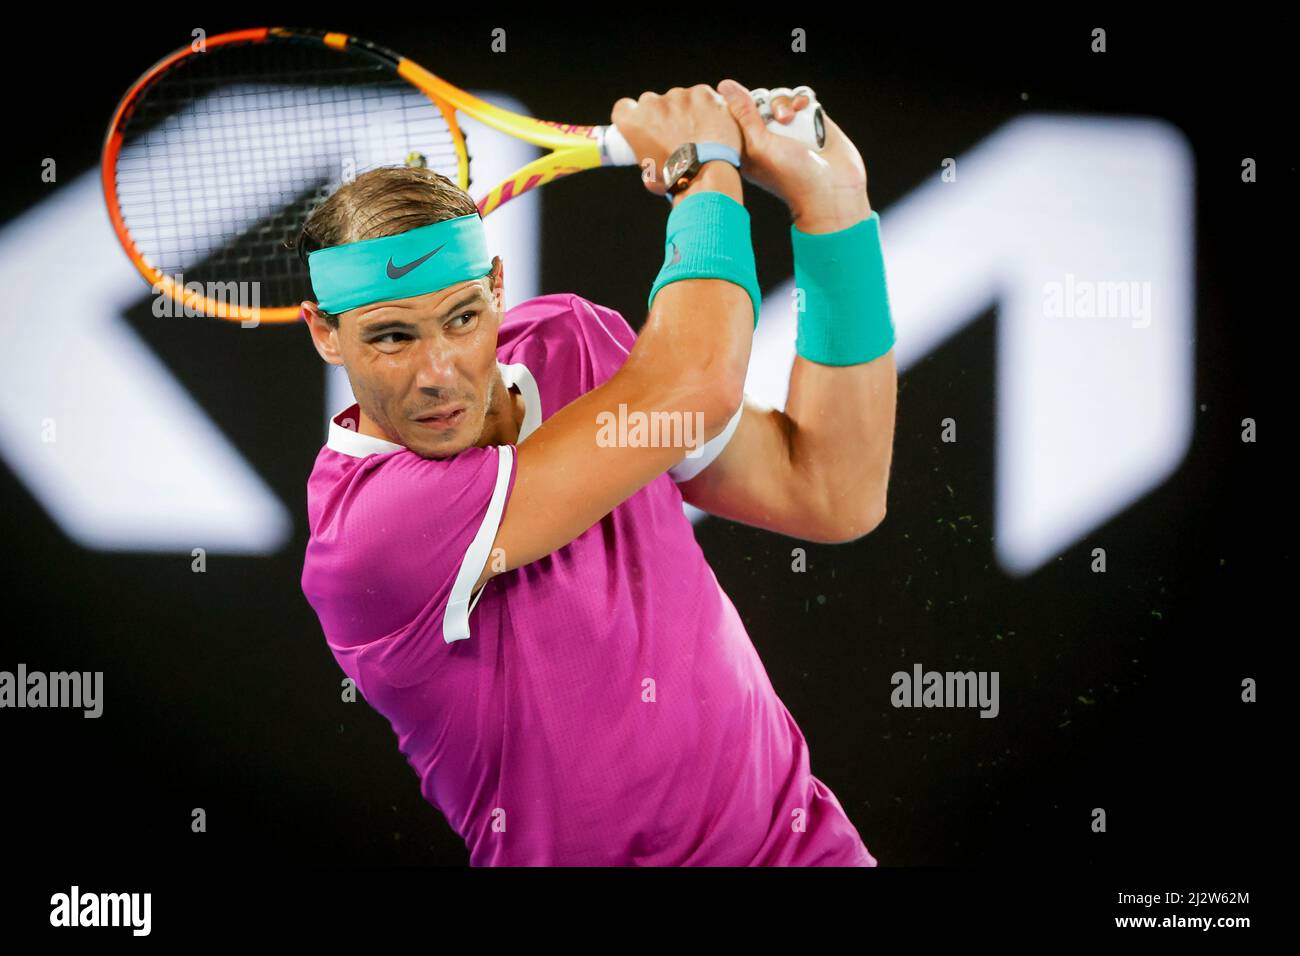 Joueur de tennis espagnol Rafael Nadal jouant à l'occasion d'un tournoi Open 2022 d'Australie, Melbourne Park, Melbourne, Victoria, Australie . Banque D'Images